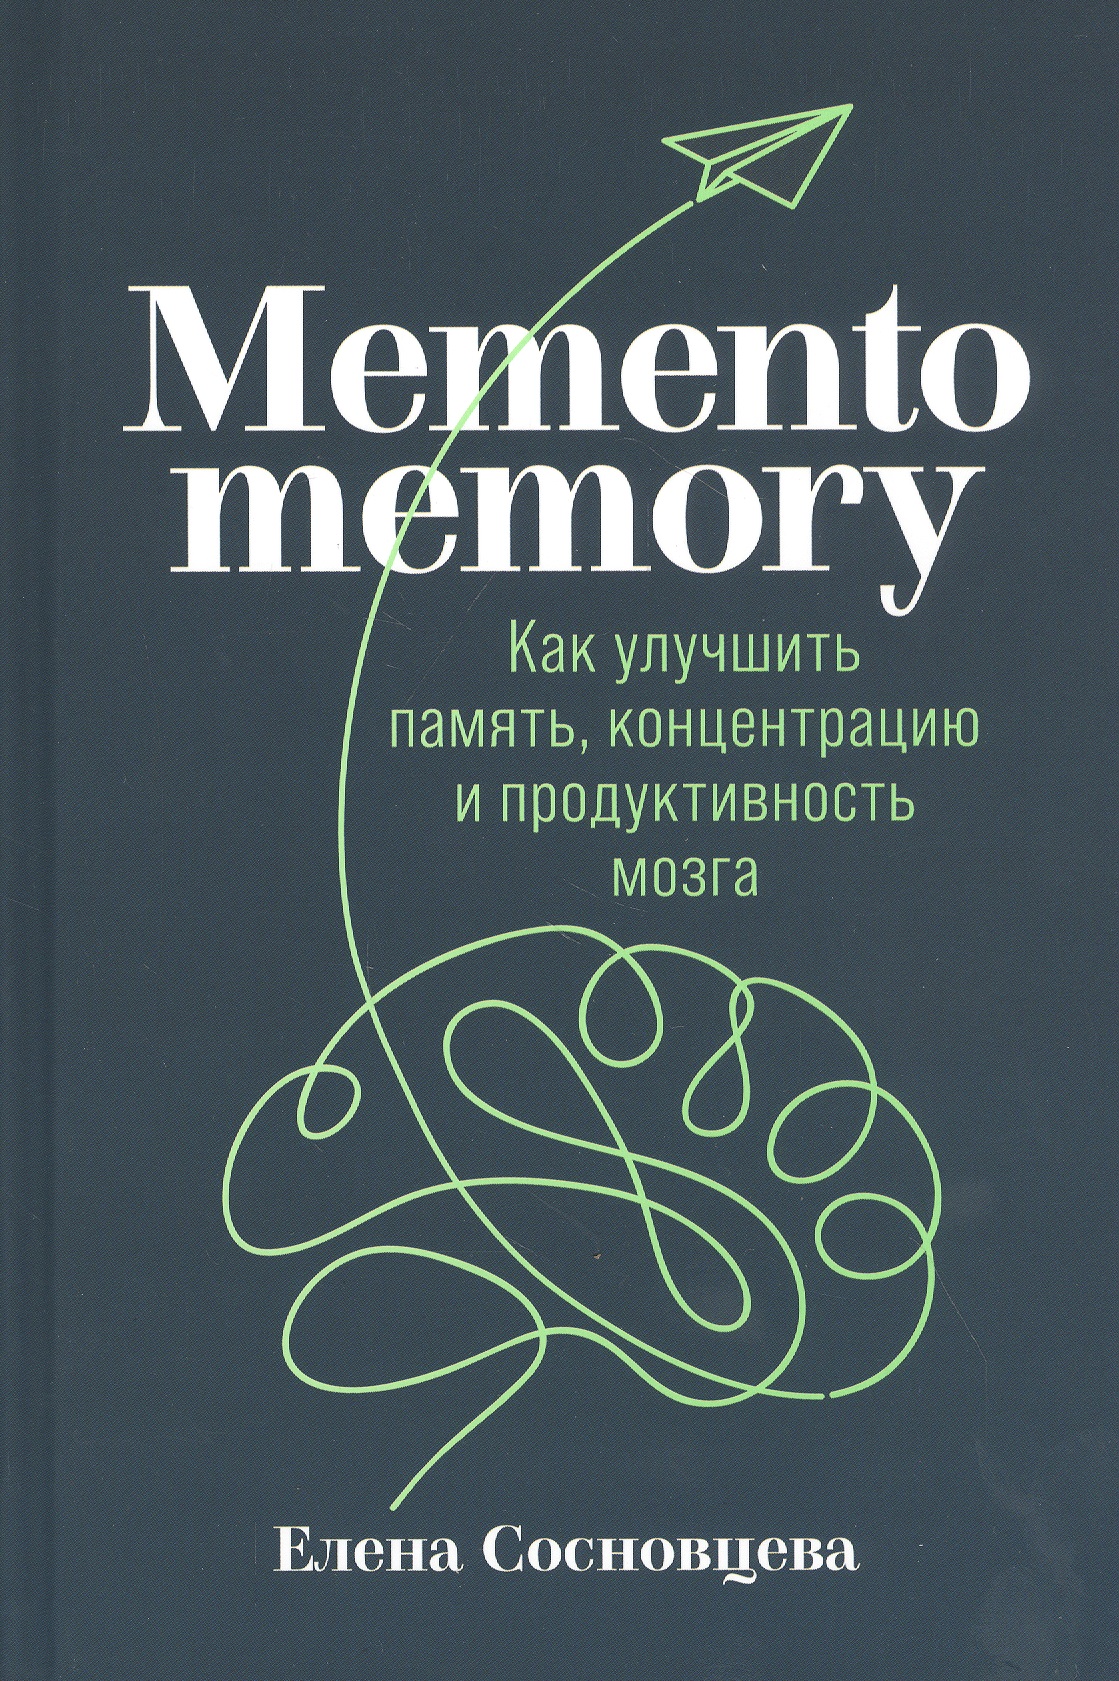 хамидова виолетта романовна как улучшить память и освоить технику скорочтения Memento memory: Как улучшить память, концентрацию и продуктивность мозга